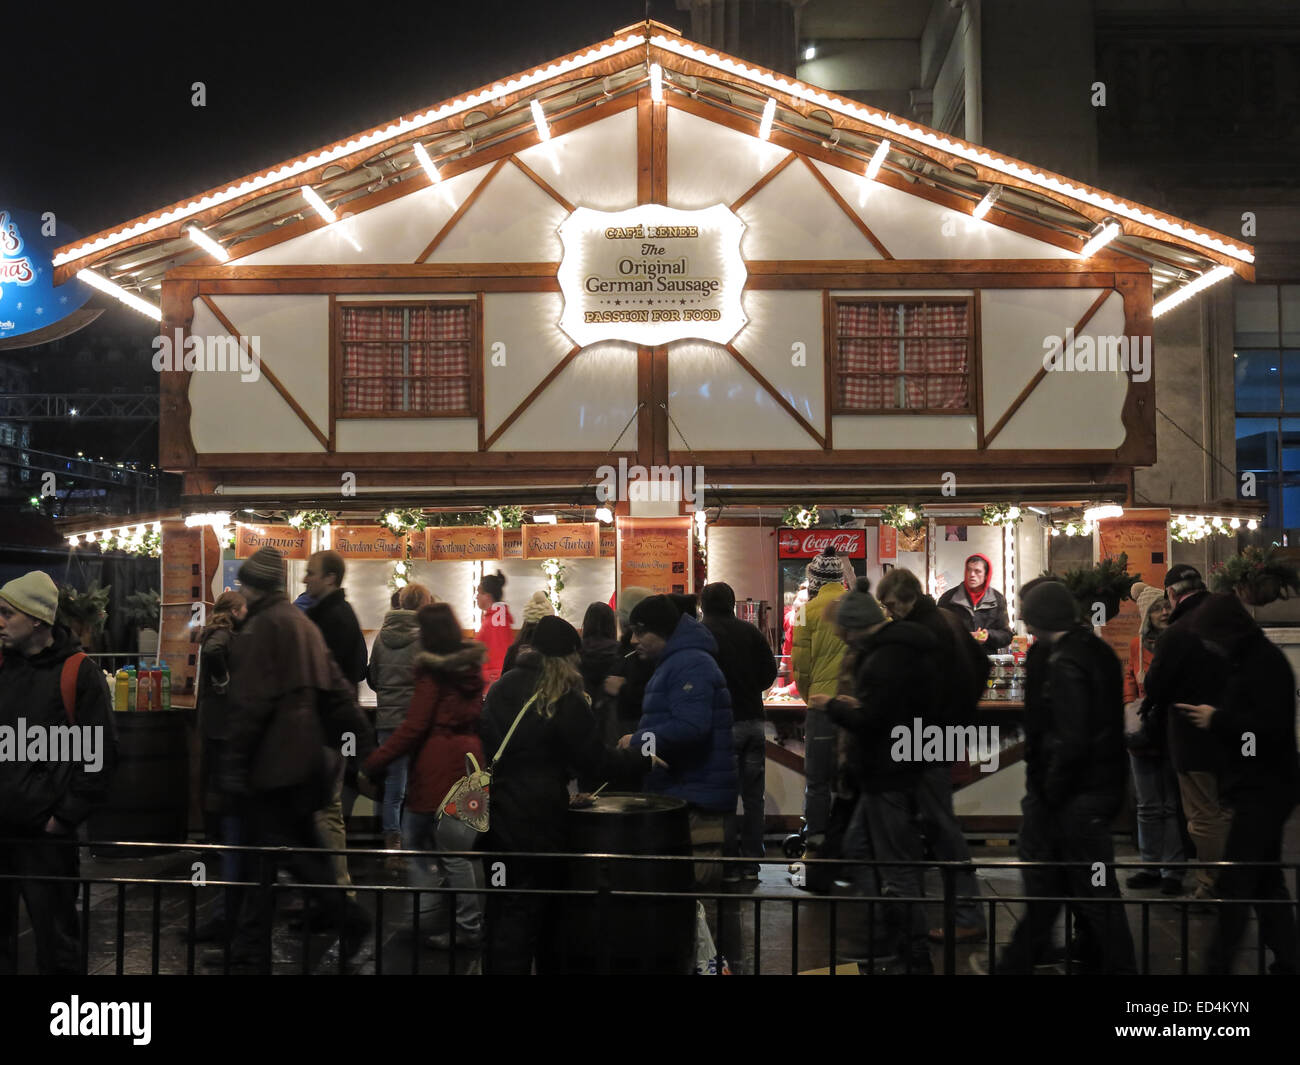 Edimbourg à Xmas, café Renee, German Sausage House, sur les marchés de Noël d'Edinburghs, Princes Street, Écosse, Royaume-Uni, EH2 4AD Banque D'Images